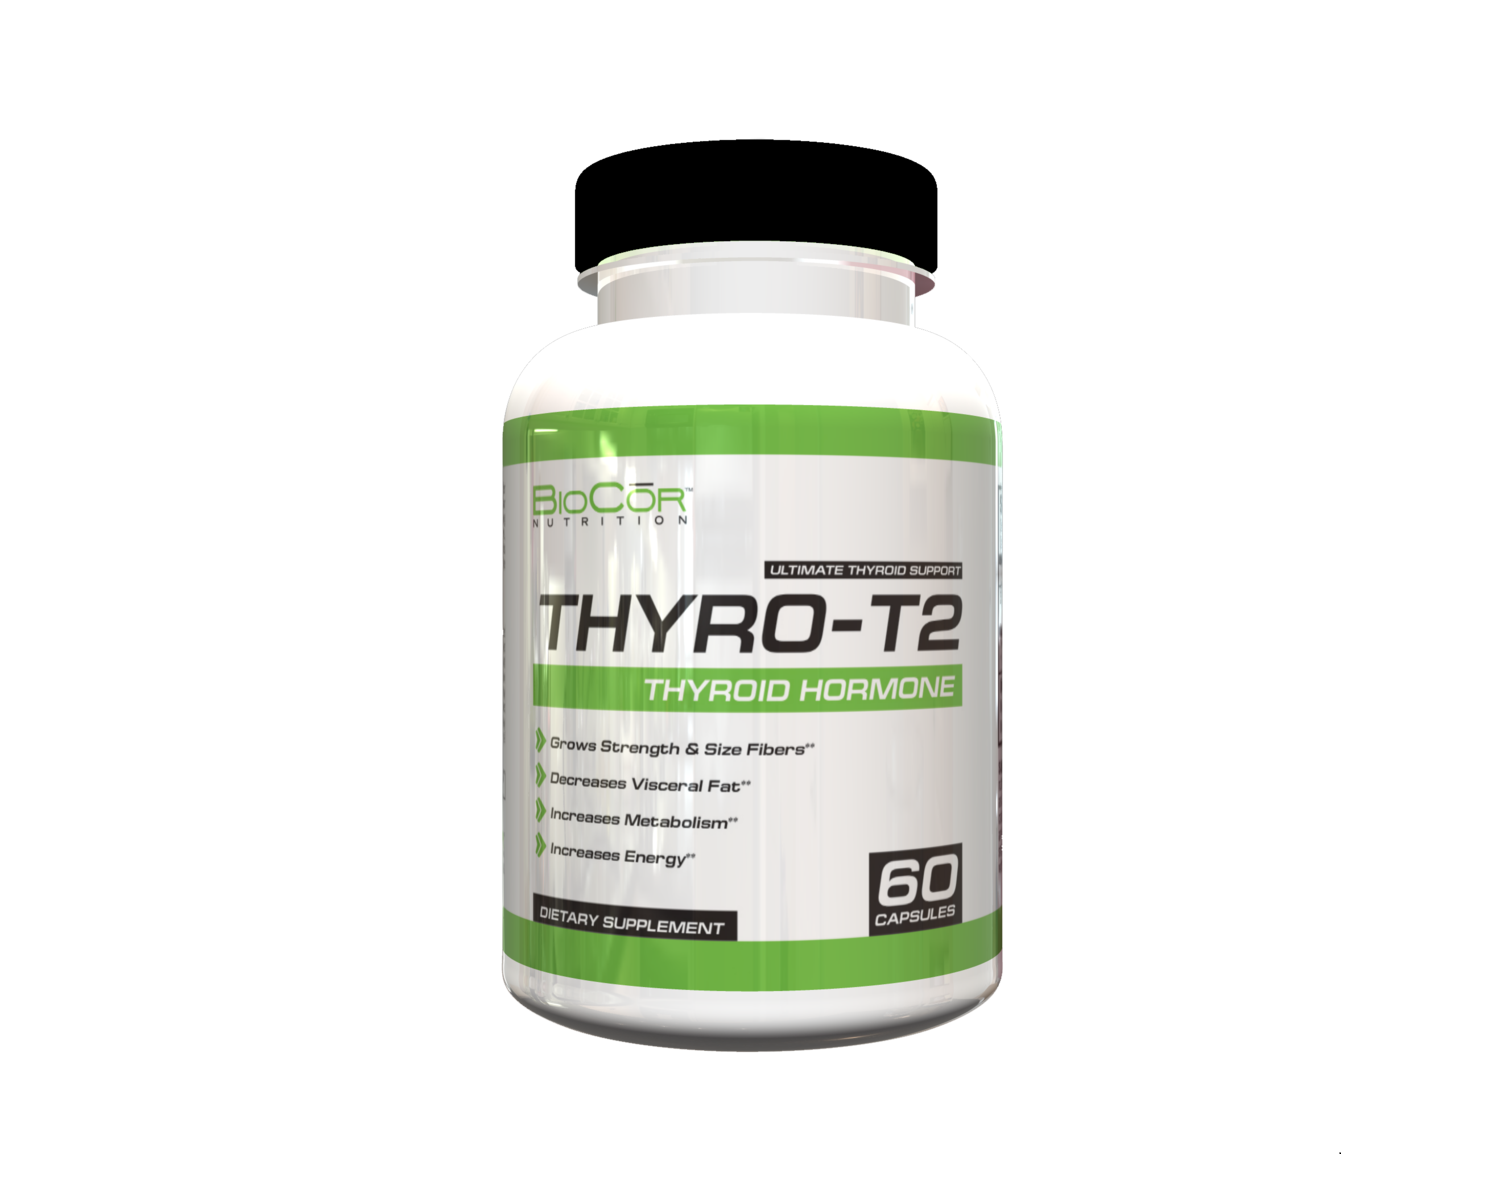 Thyro-T2